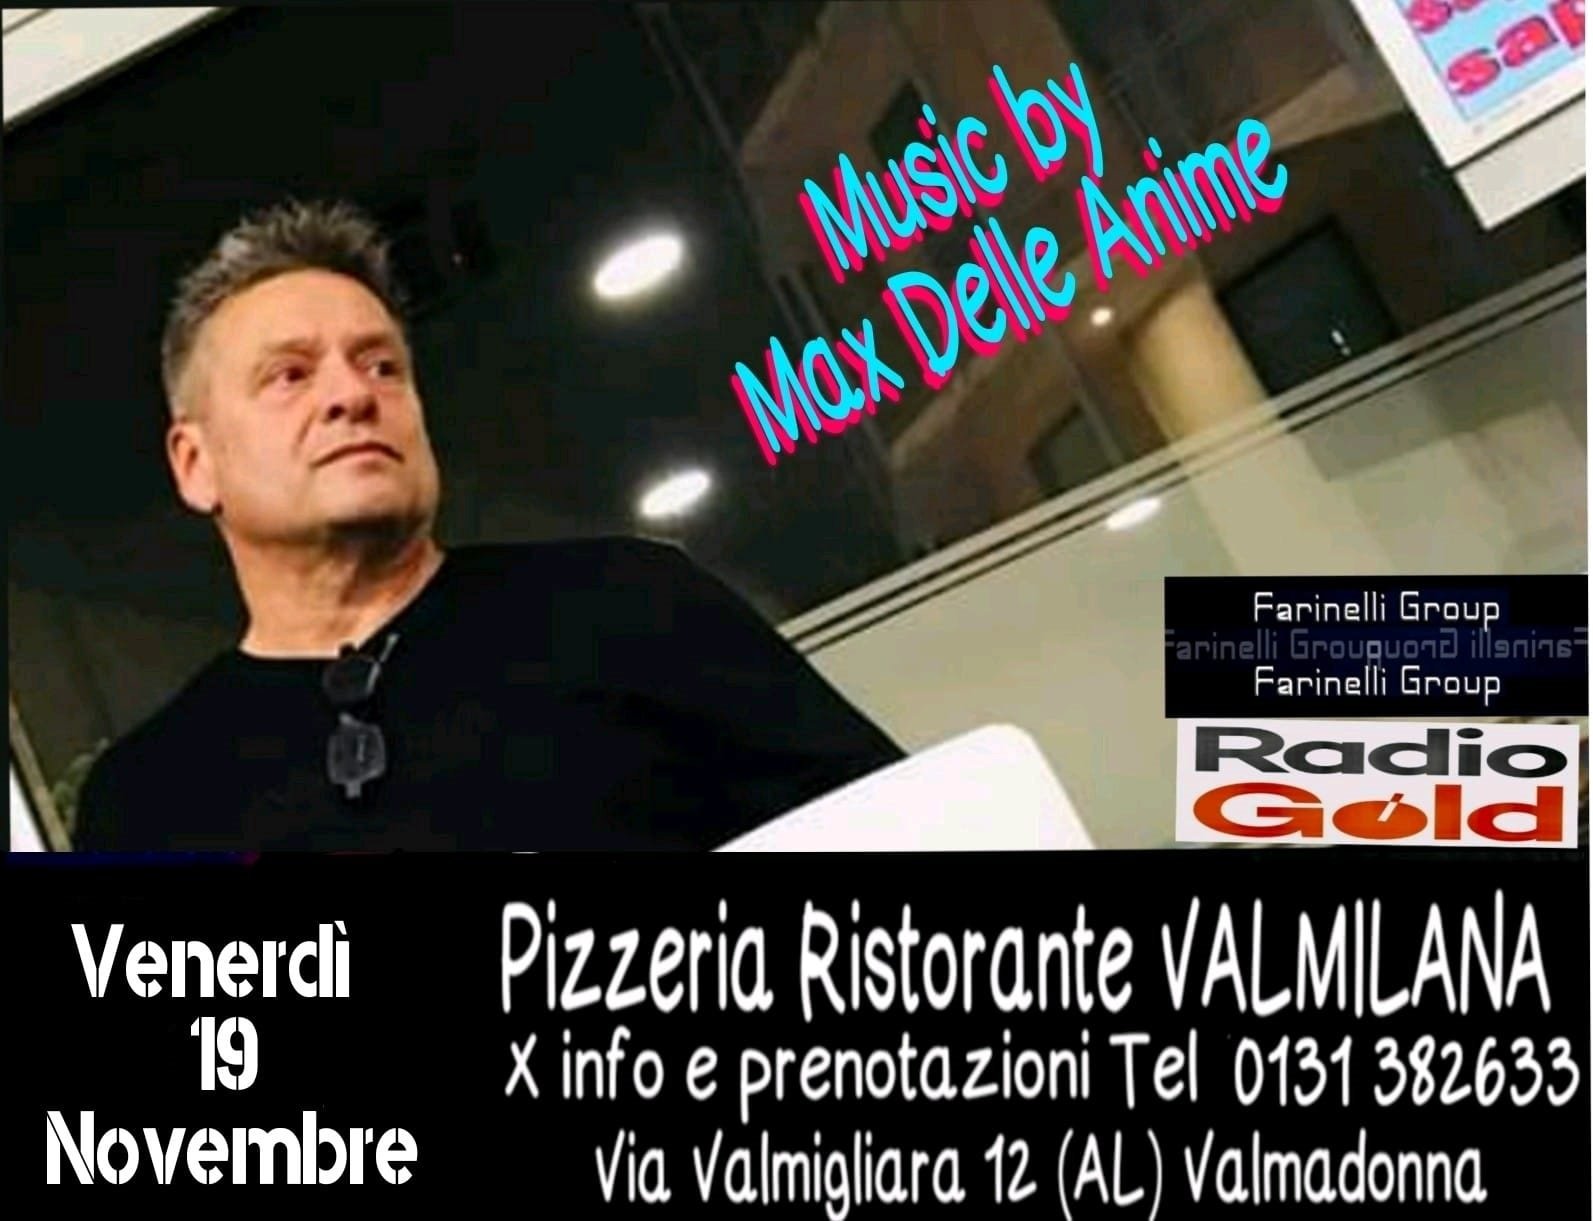 Il 19 novembre karaoke alla pizzeria ristorante Valmilana con Max delle Anime